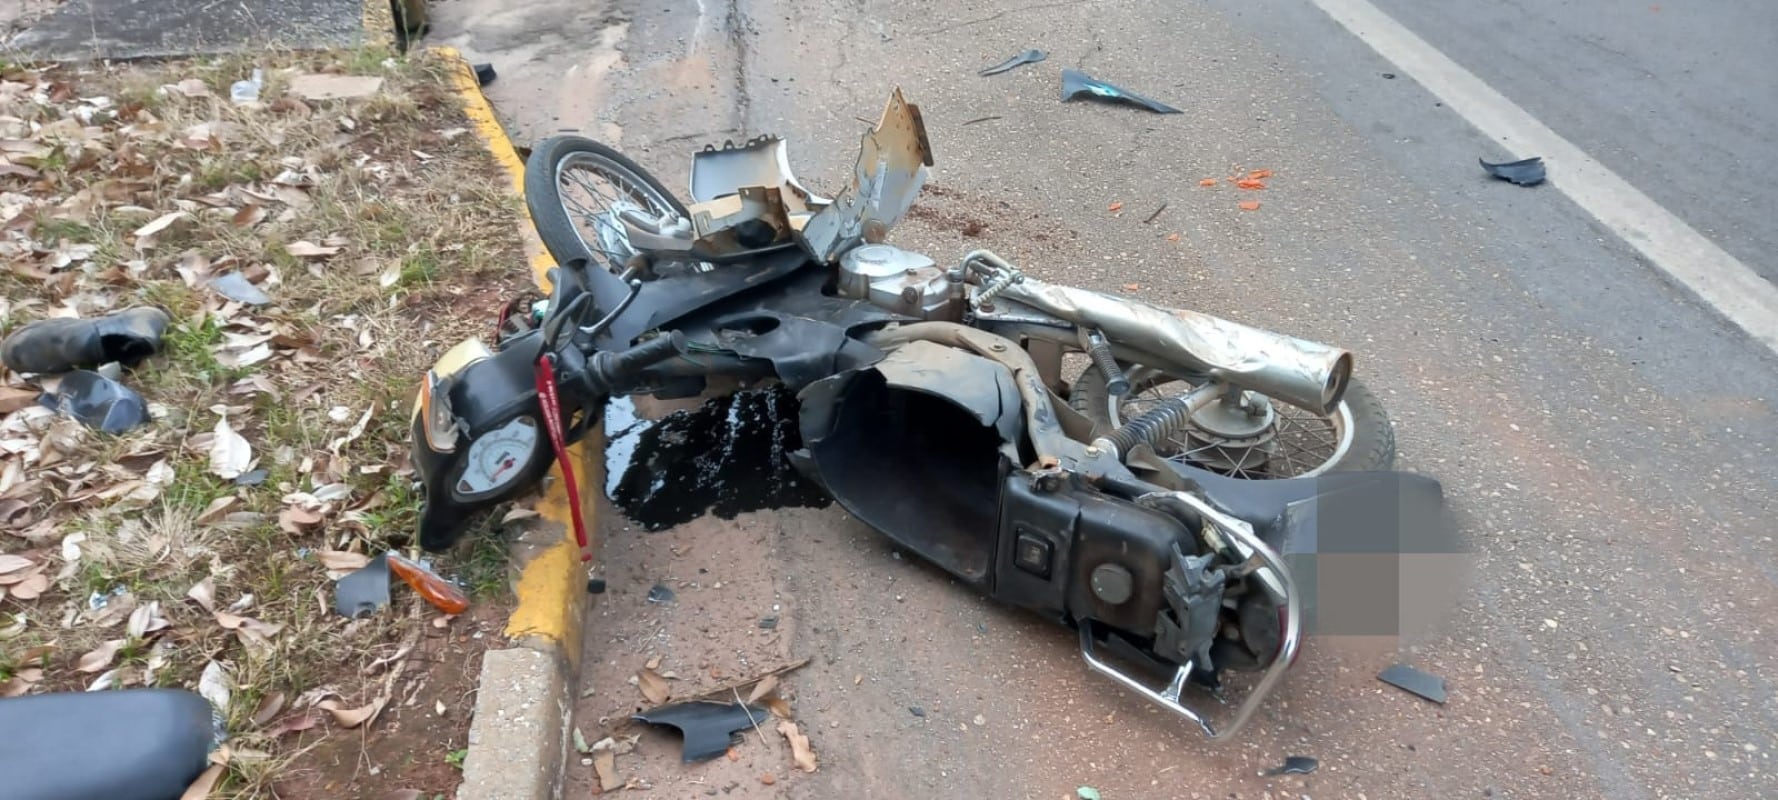 Motoneta fica destruída em acidente de trânsito em Lucas do Rio Verde